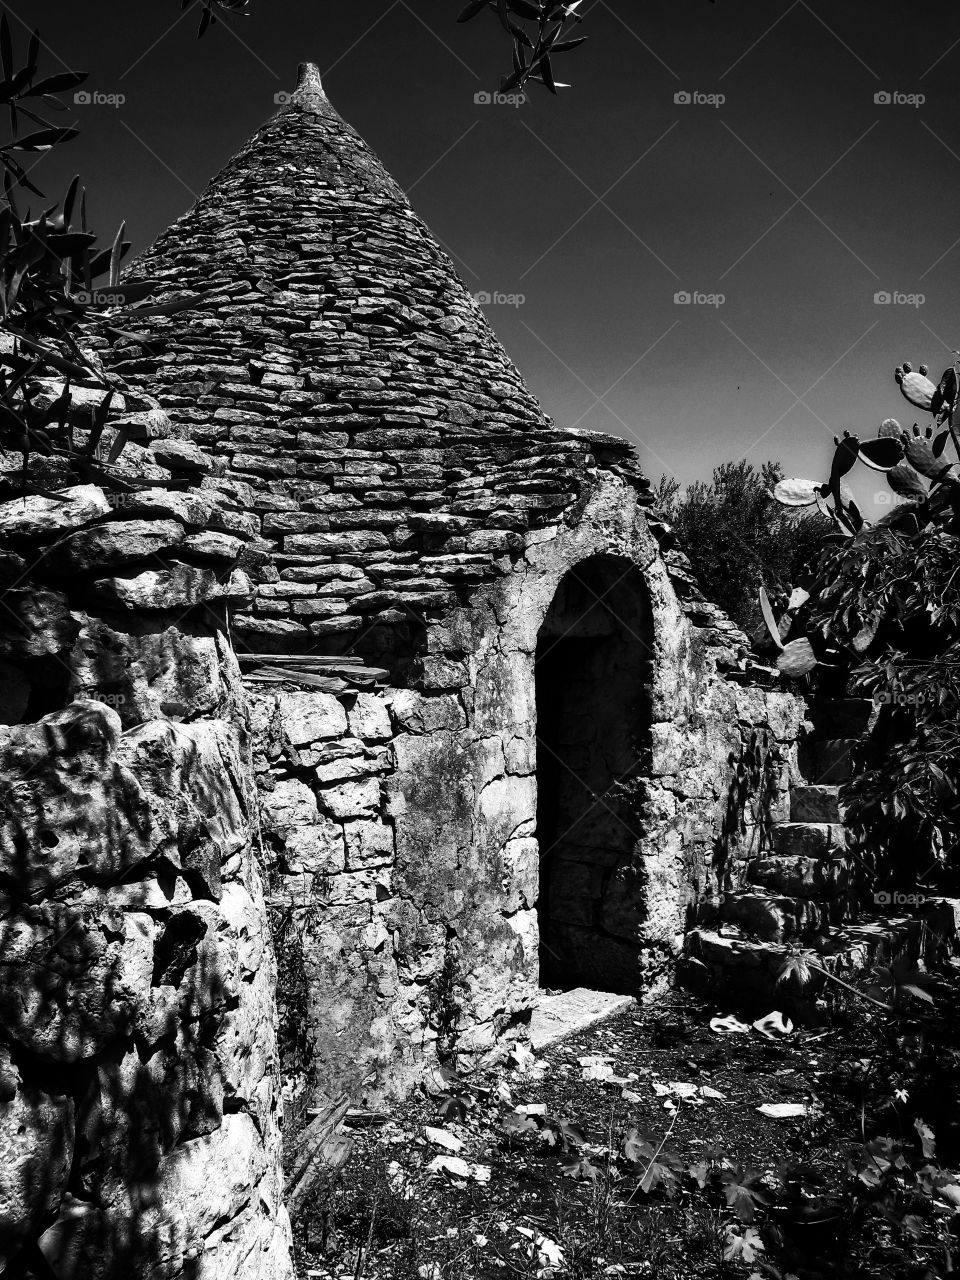 Trullo. Country stone hut